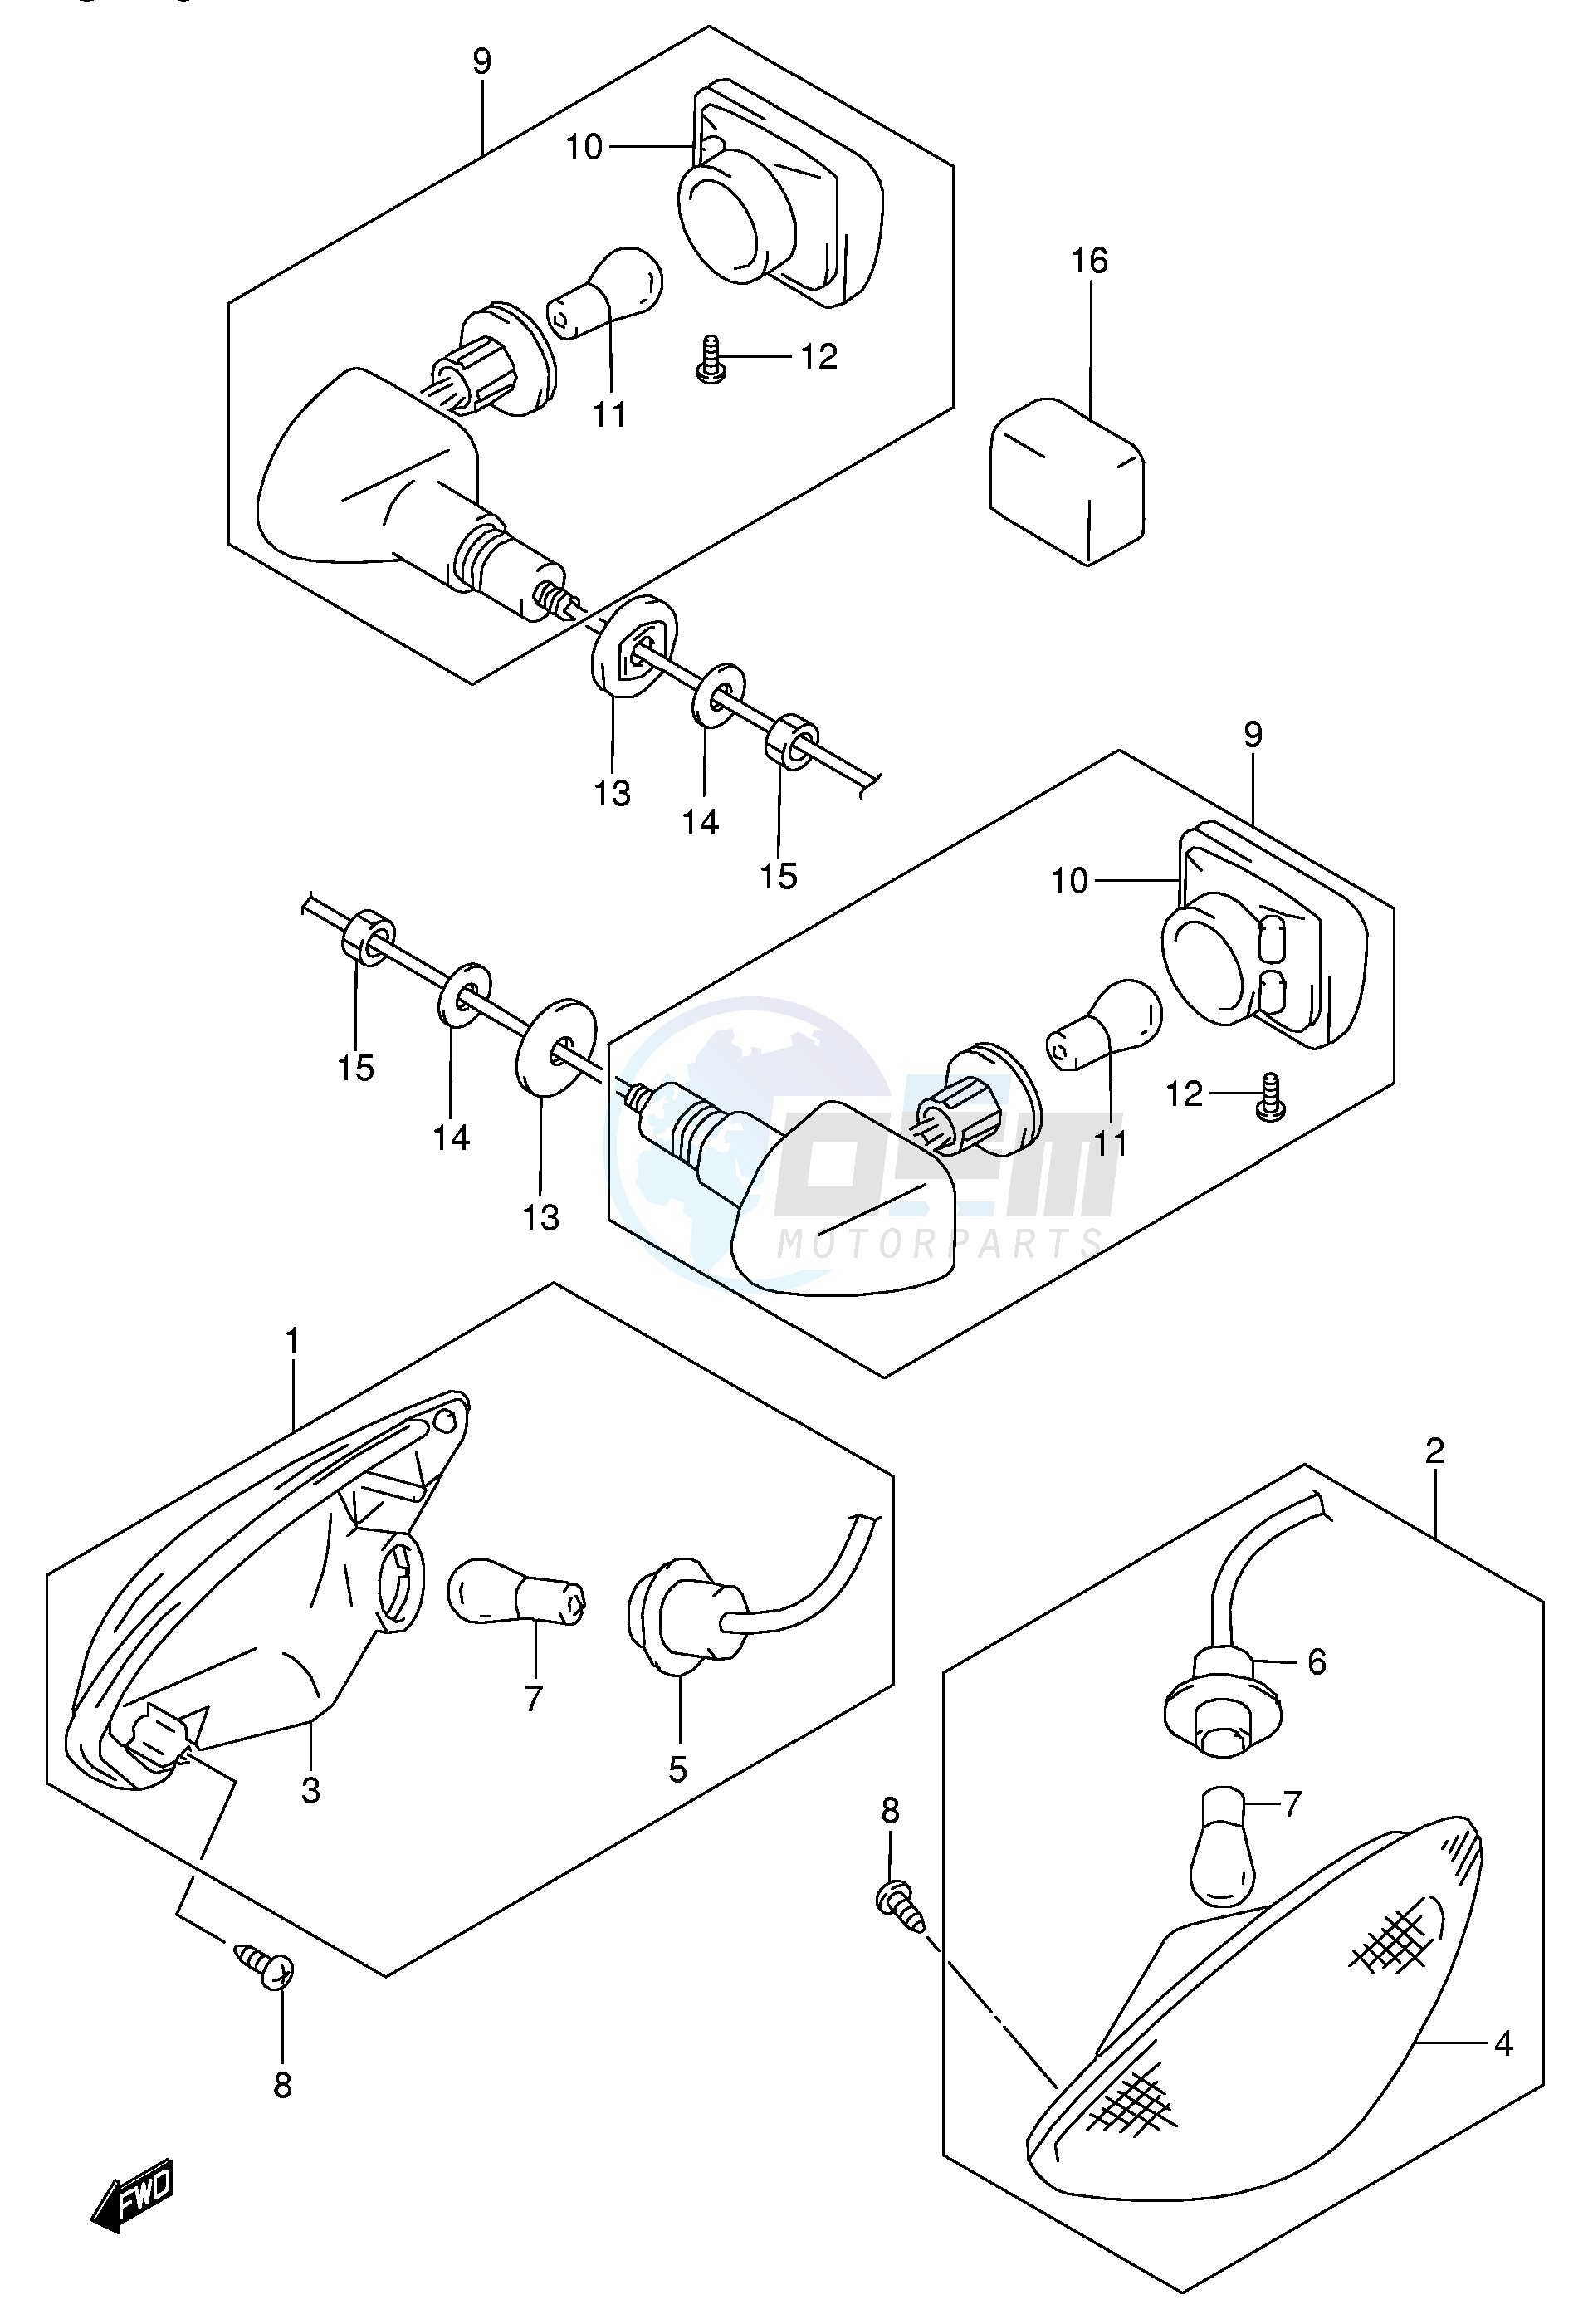 TURNSIGNAL LAMP (MODEL K4 K5) blueprint